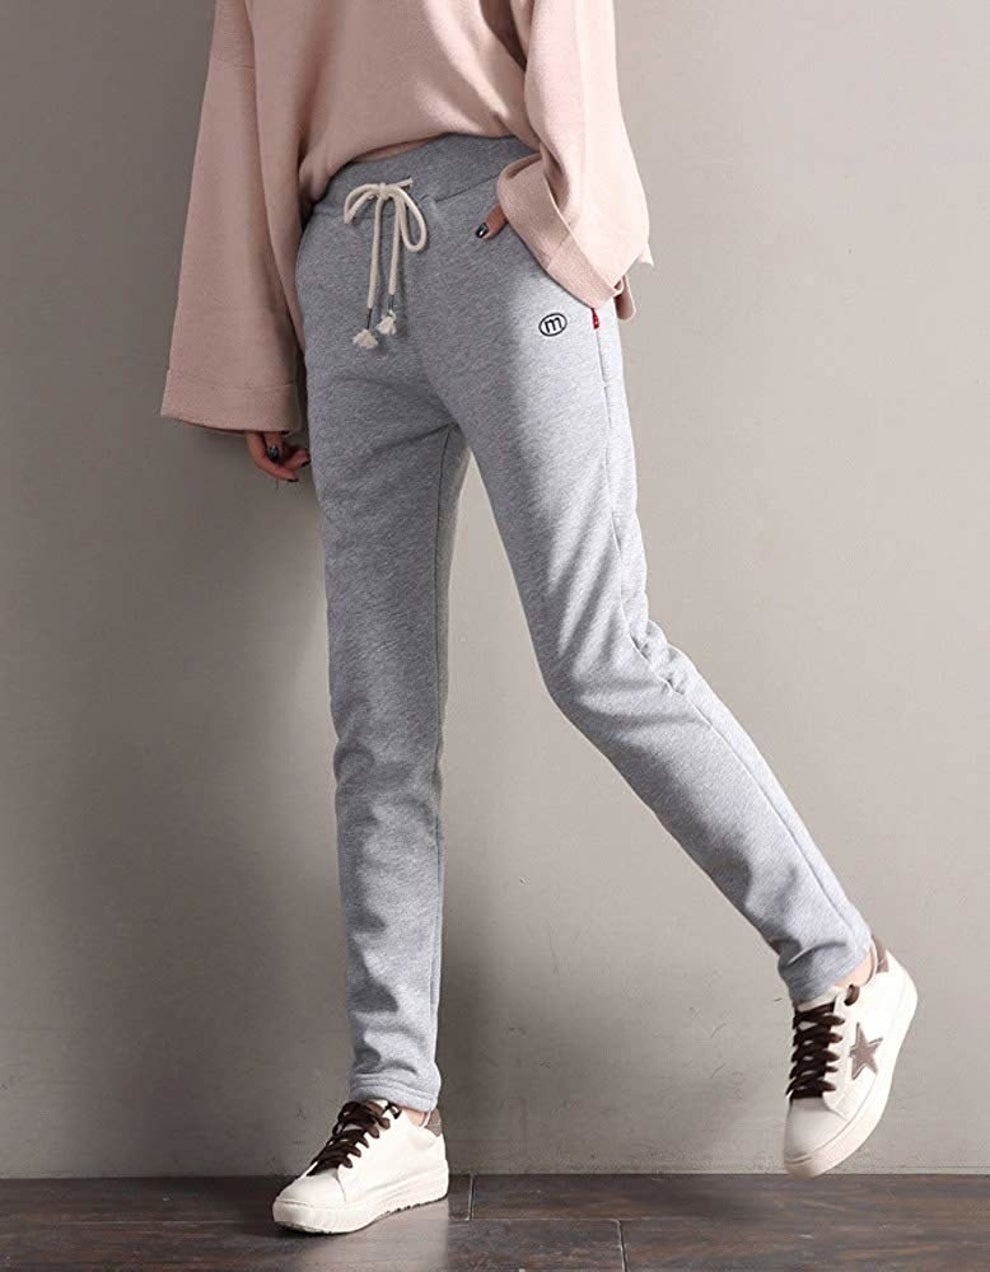 Pant Design For Girls 2020, Trouser Design, Latest Trendy Summer Wear Pant